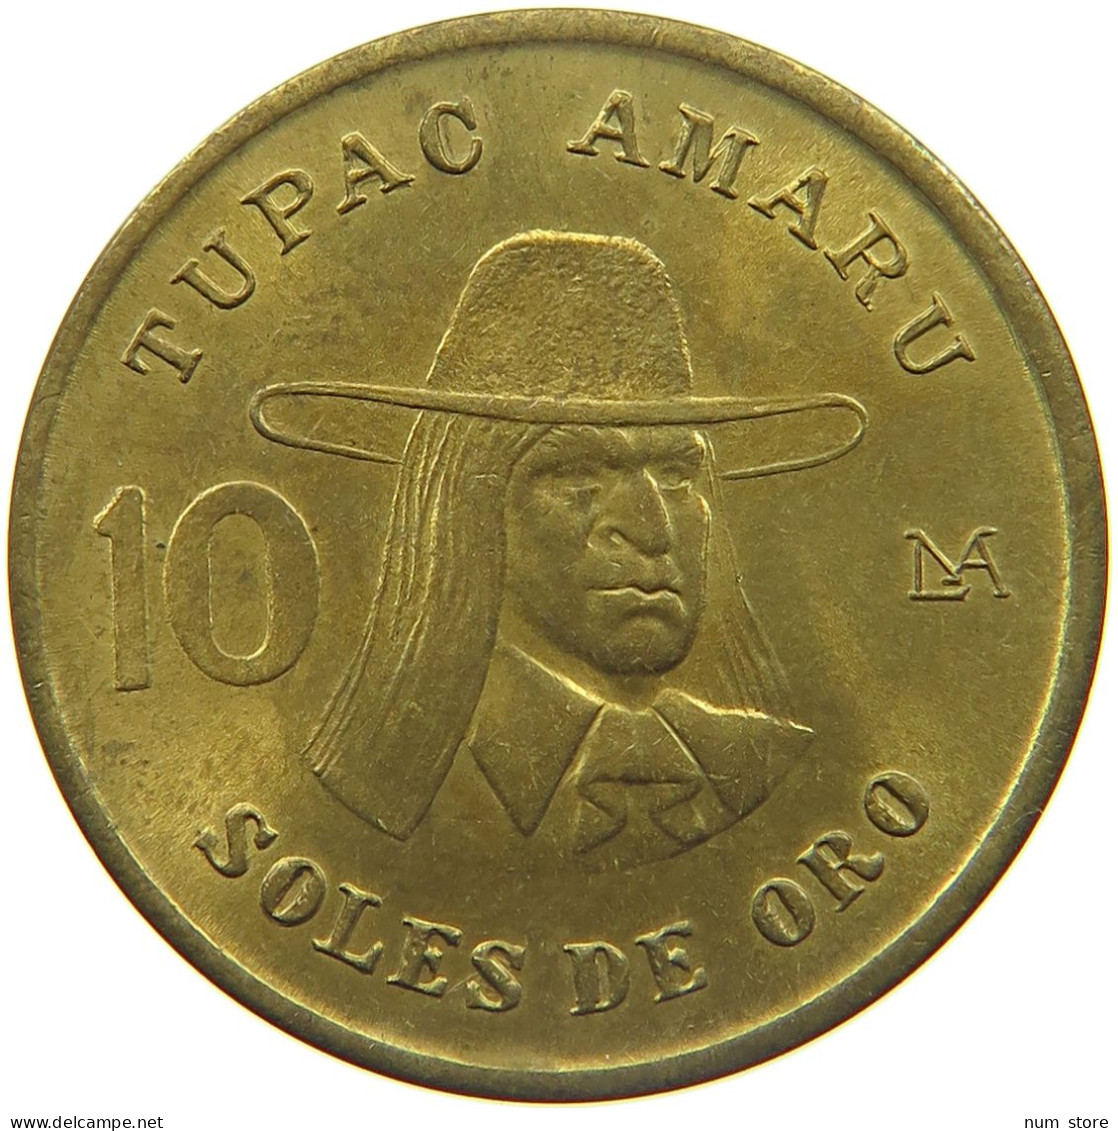 PERU 10 SOLES 1980  #MA 025195 - Peru